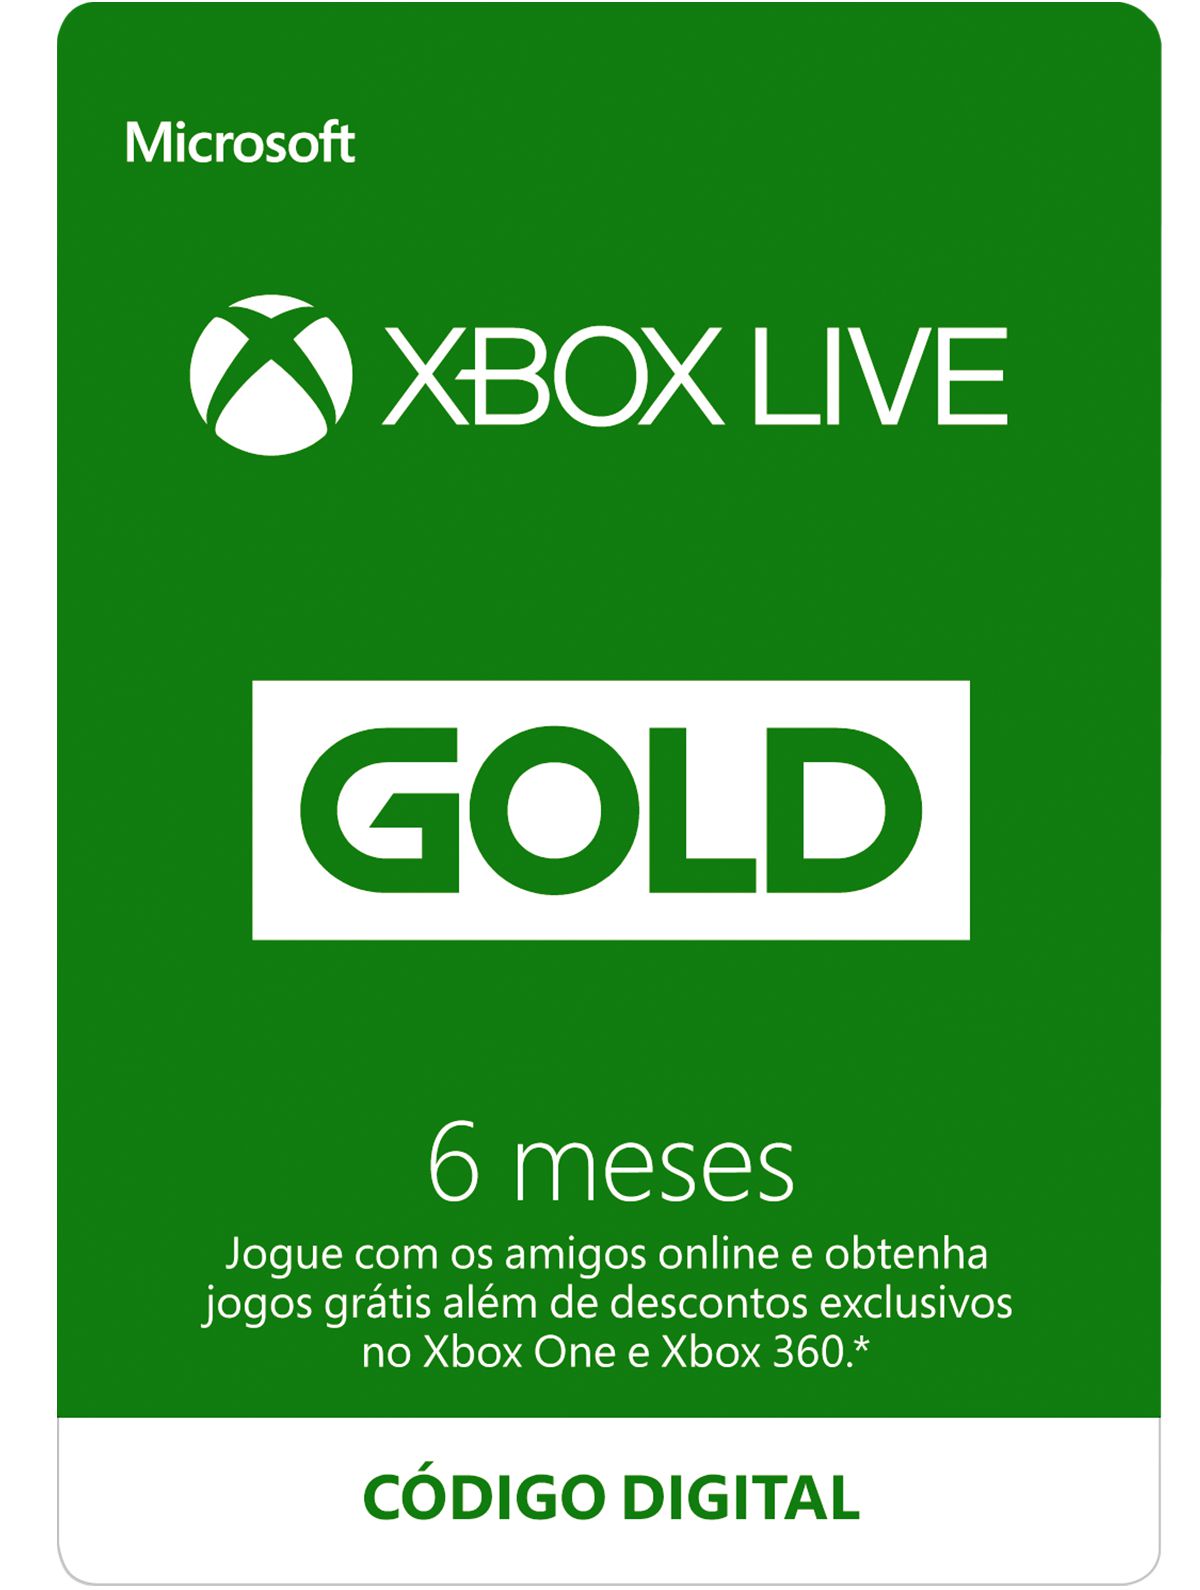 Game Pass Ultimate 12 Meses Código 25 Dígitos - Xbox One